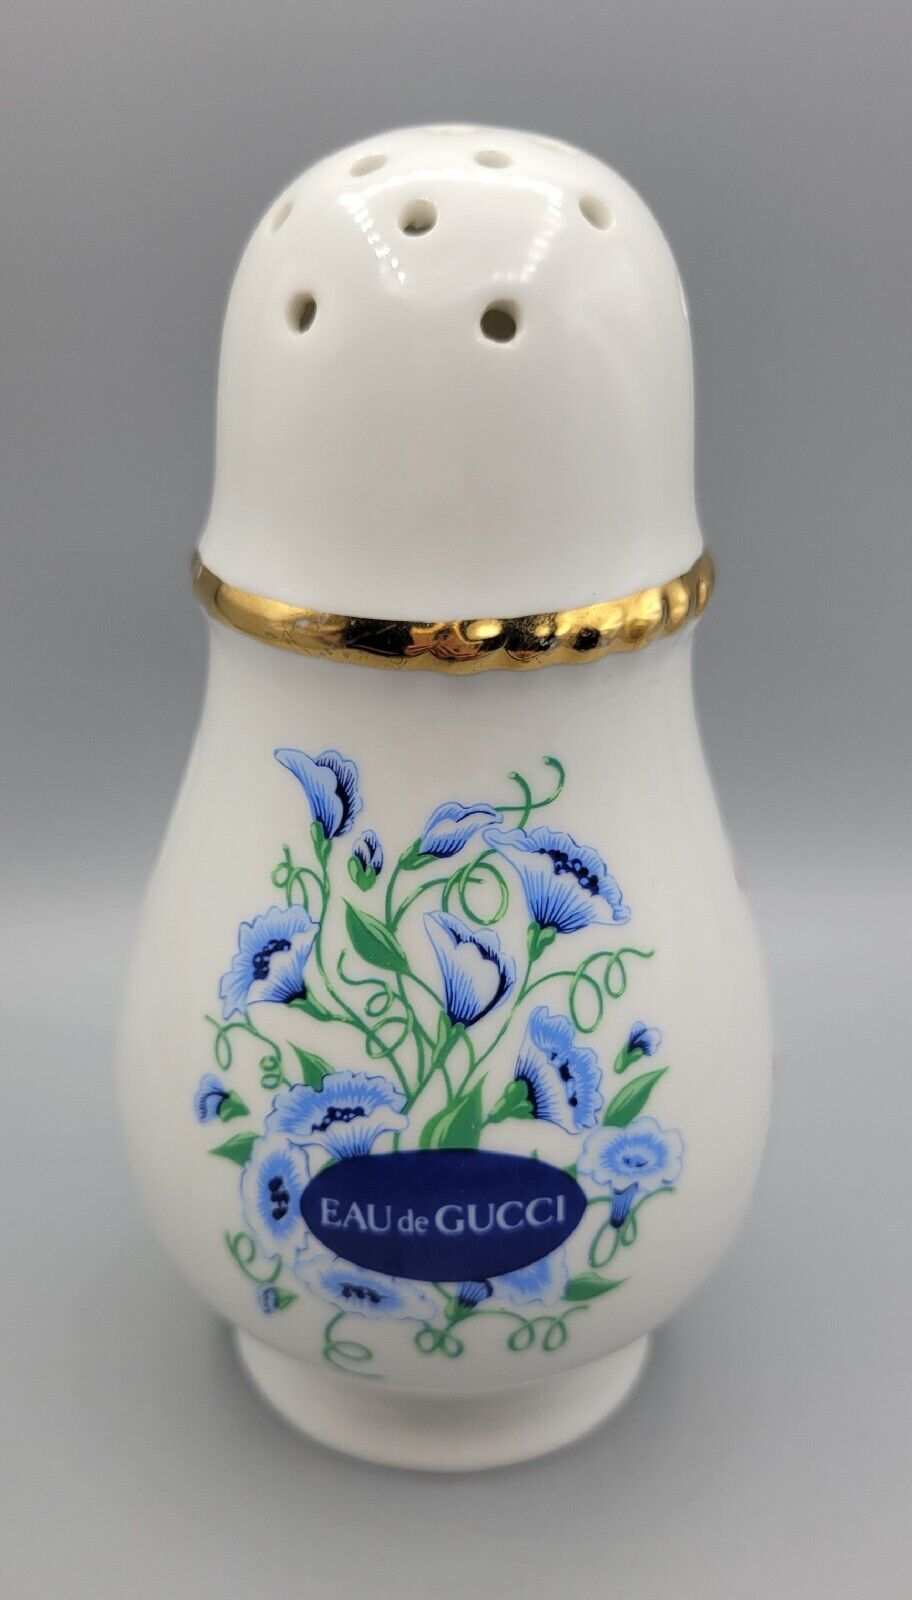 EAU de GUCCI Vintage Porcelain Floral Dusting Powder Shaker Jar